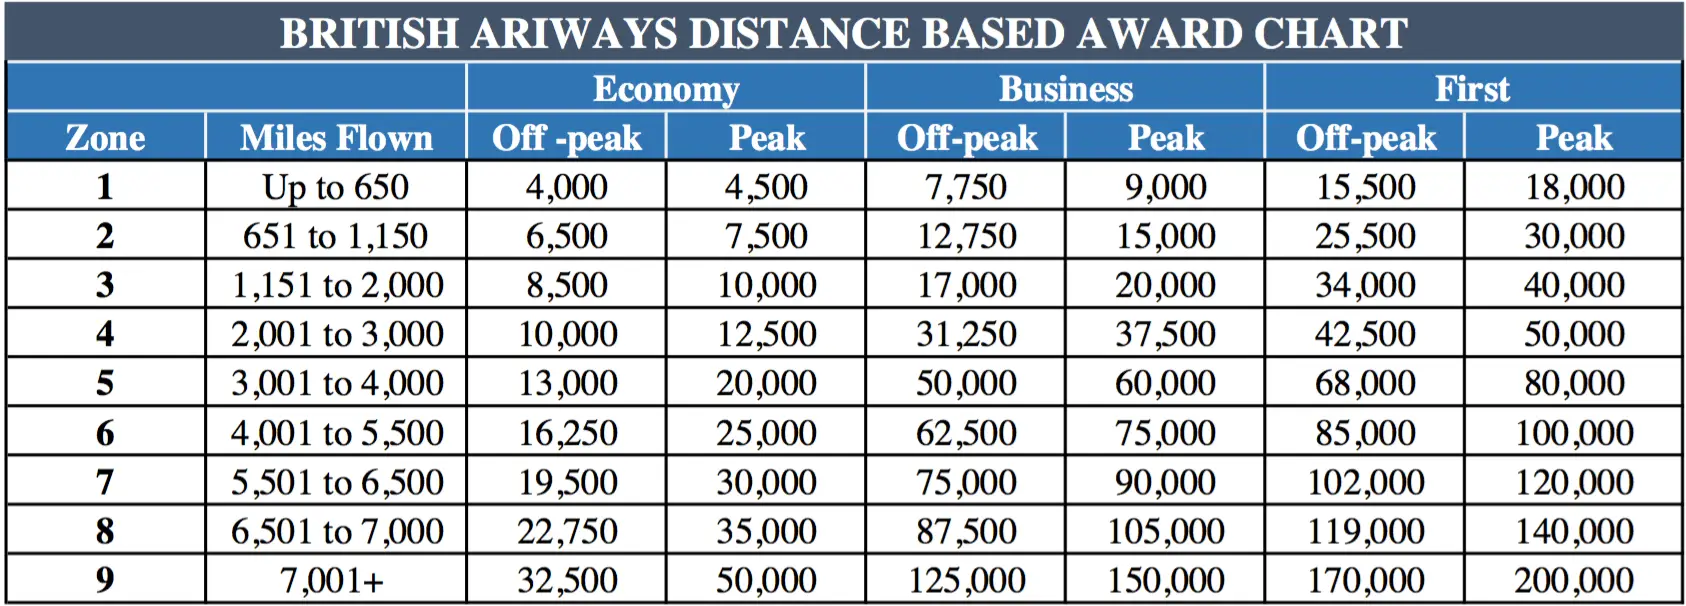 Cuadro de premios basado en la distancia de British Airways